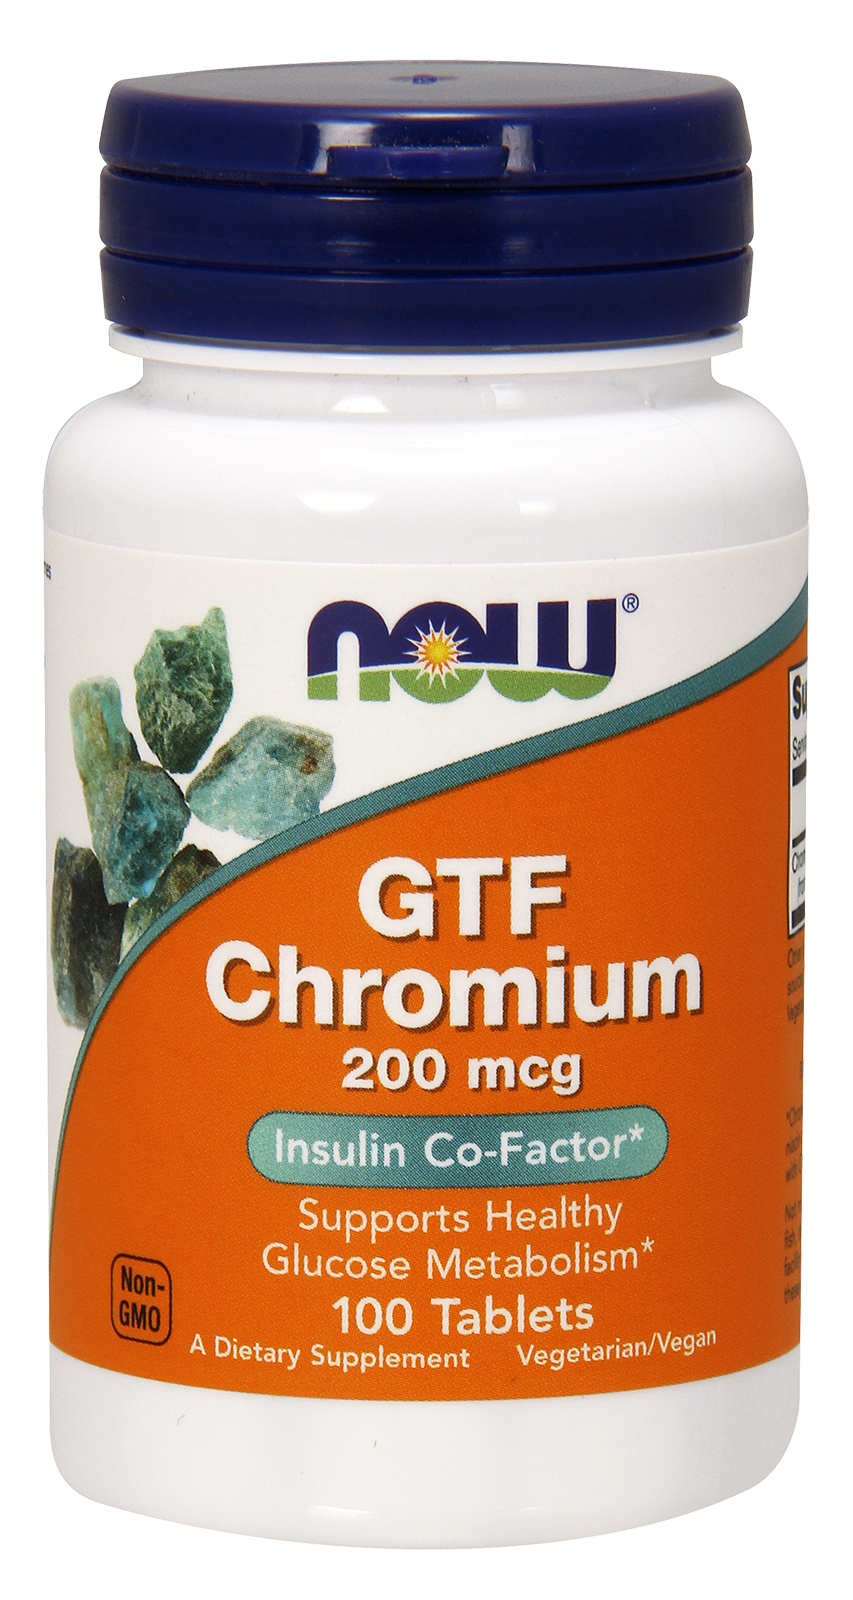 GTF Chromium 200 mcg  100 Tablets